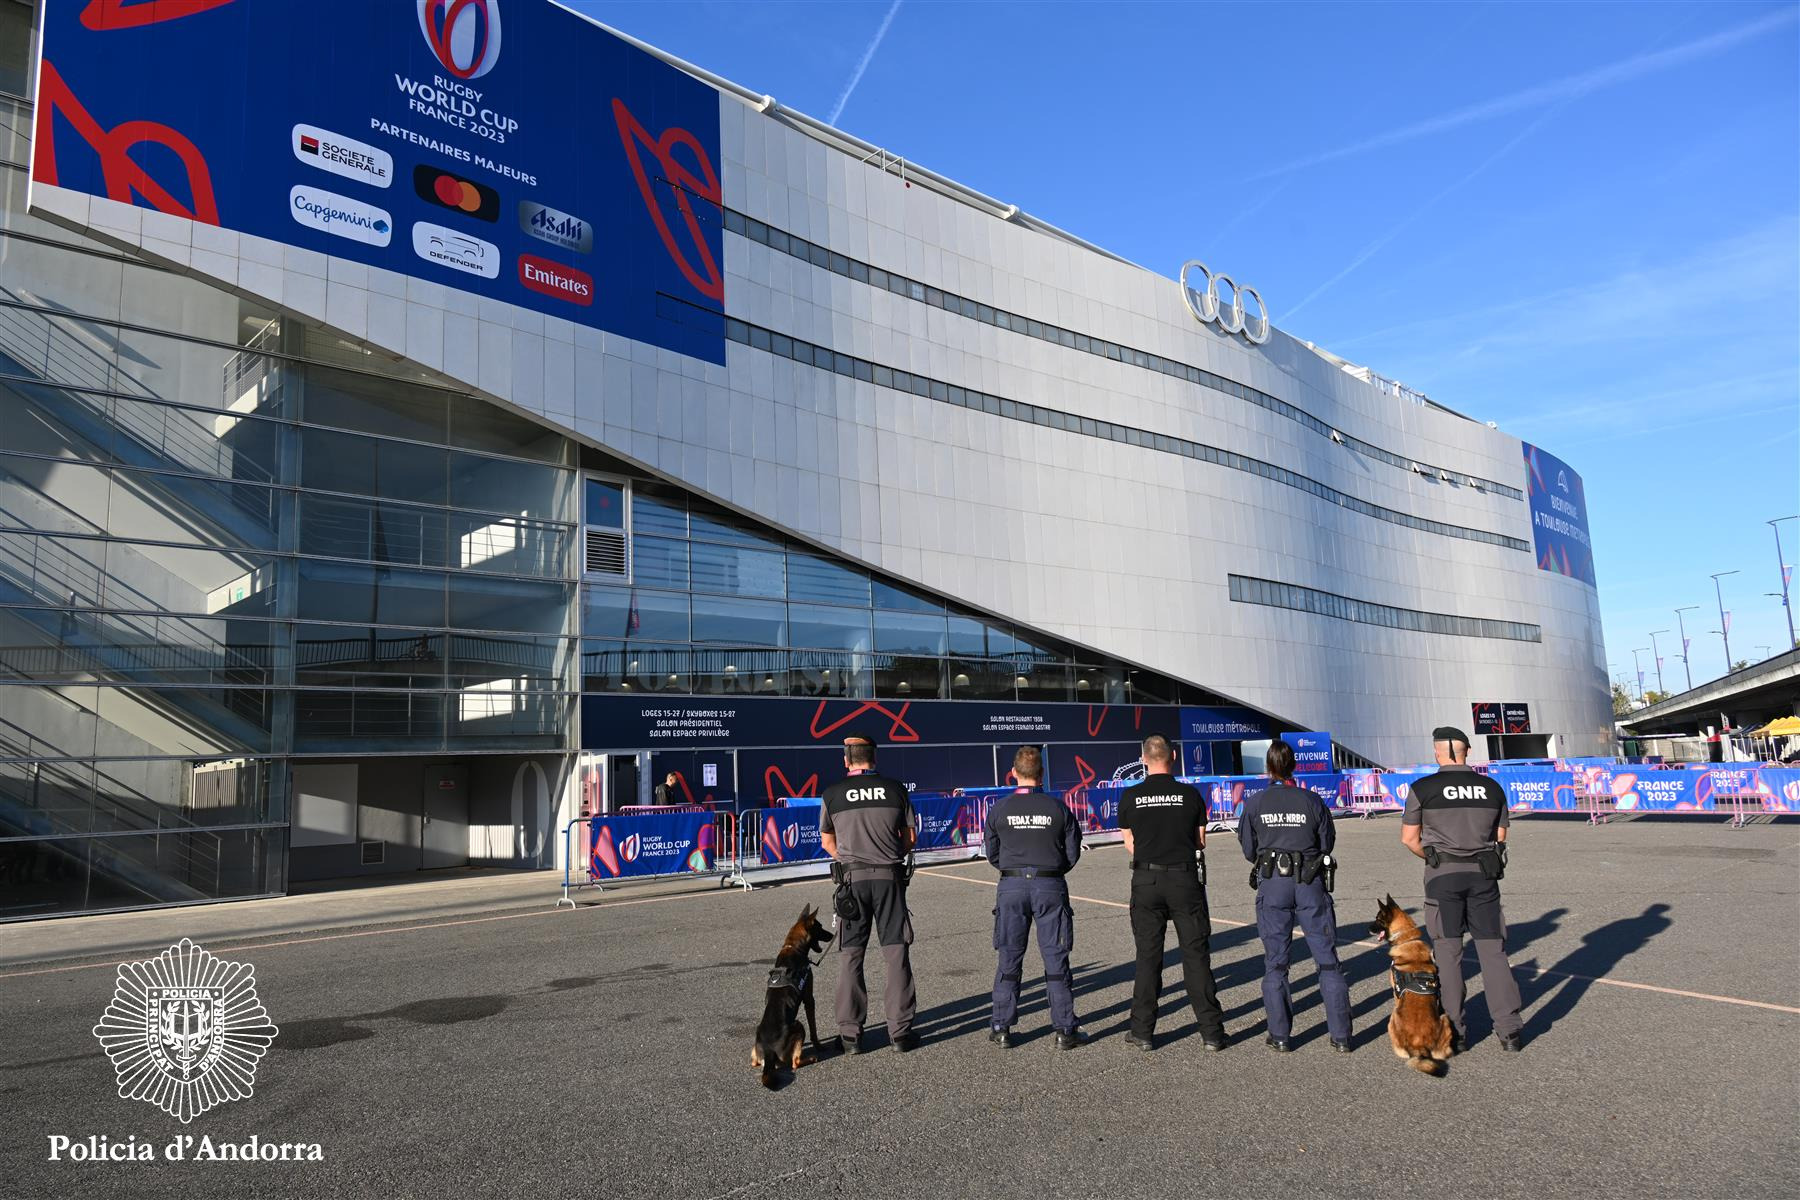 Efectius de la Policia col•laboren amb França amb tasques de prevenció i seguretat durant el Mundial de Rugbi